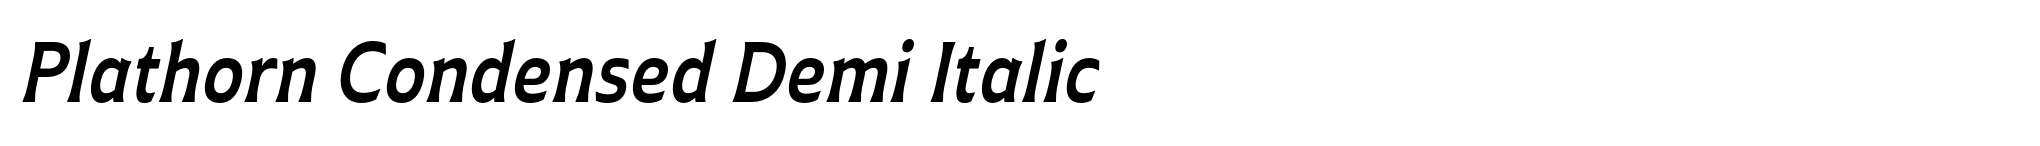 Plathorn Condensed Demi Italic image